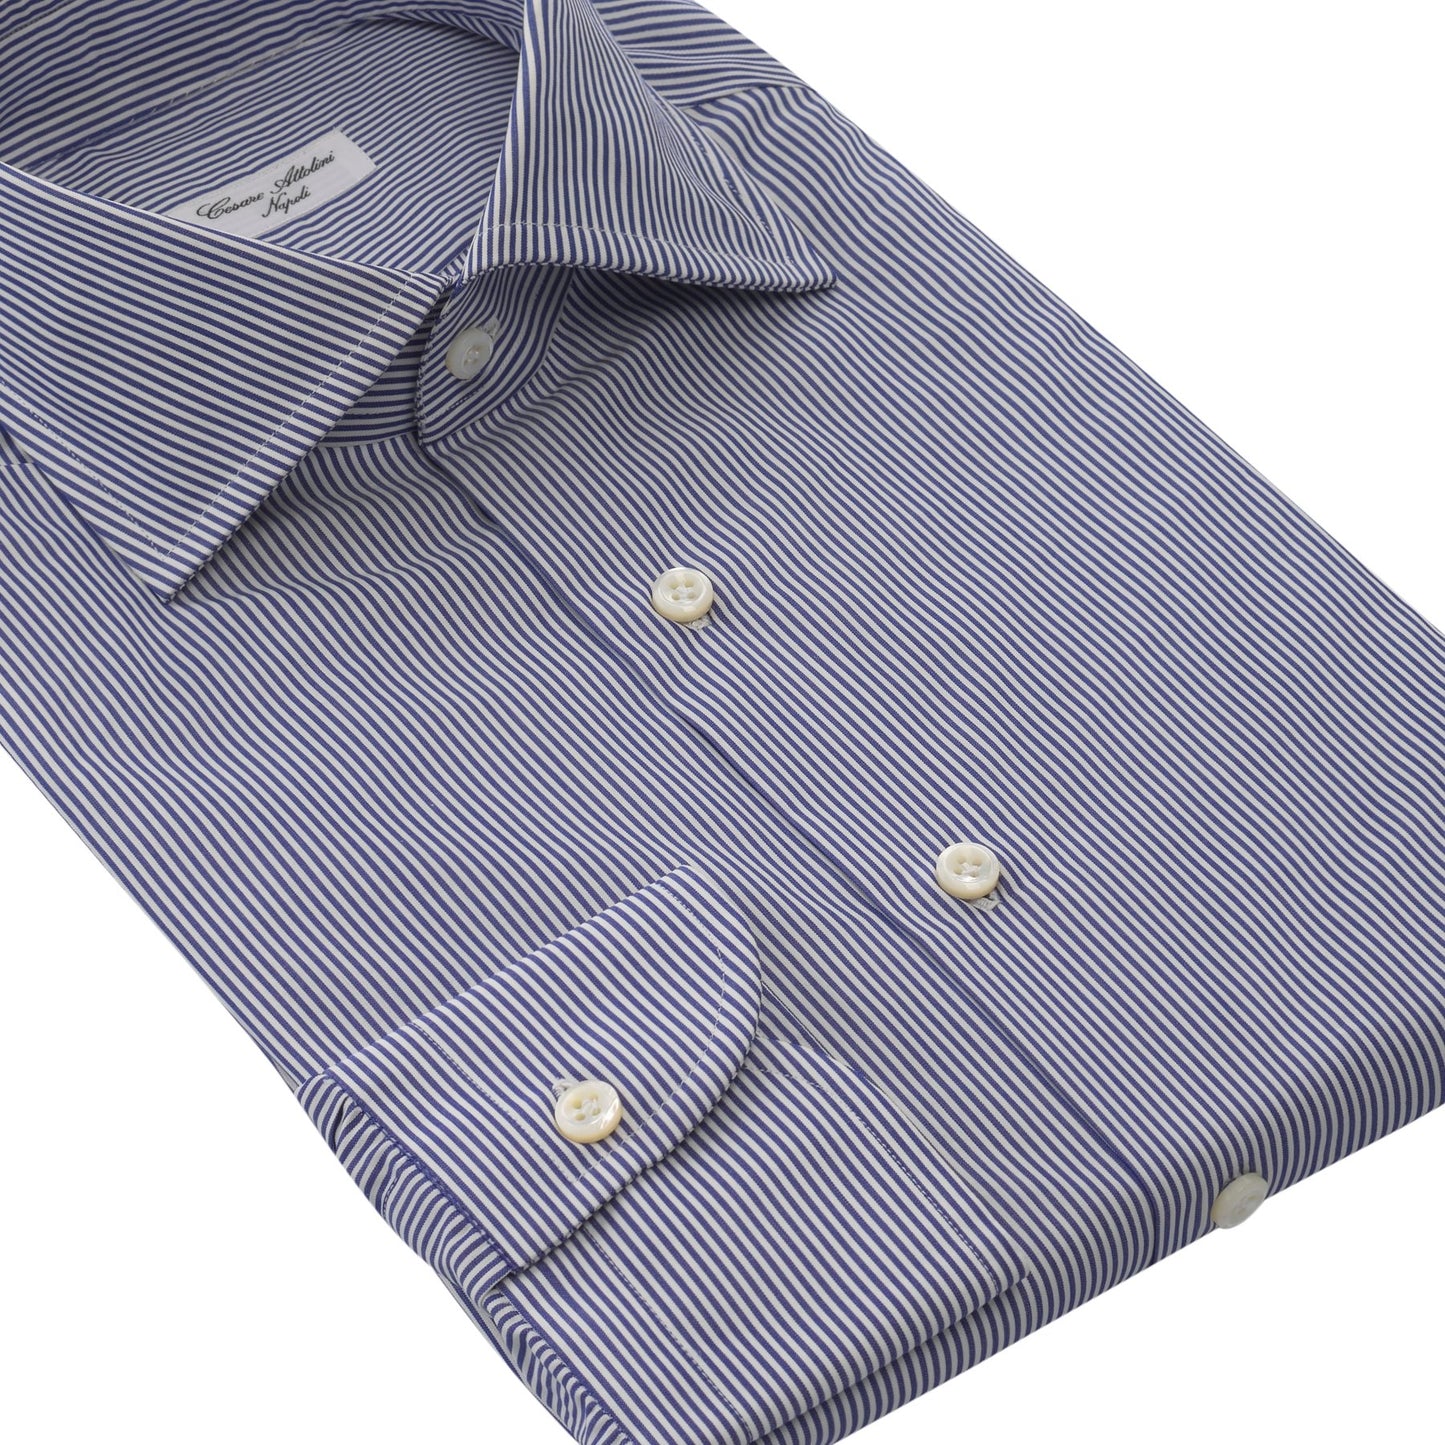 Cesare Attolini Striped Cotton Shirt in White and Blue - SARTALE